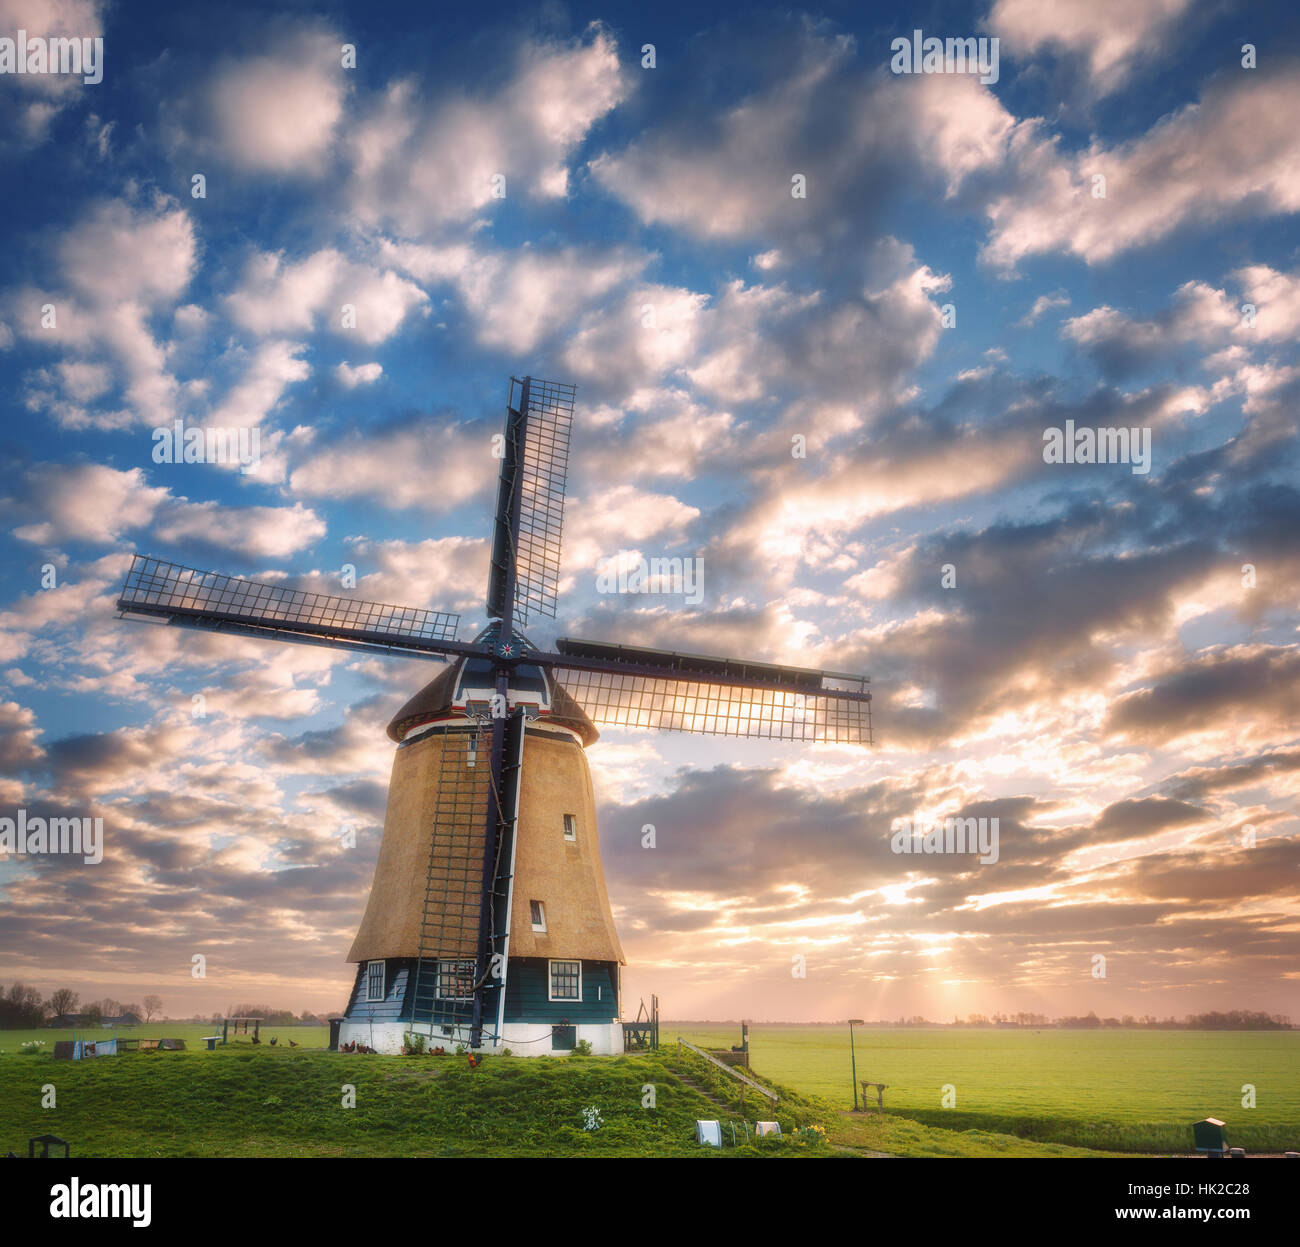 Windmühle bei Sonnenaufgang in Niederlande. Schöne alte holländische Windmühle gegen bunte Himmel mit Wolken. Frühlingslandschaft Stockfoto